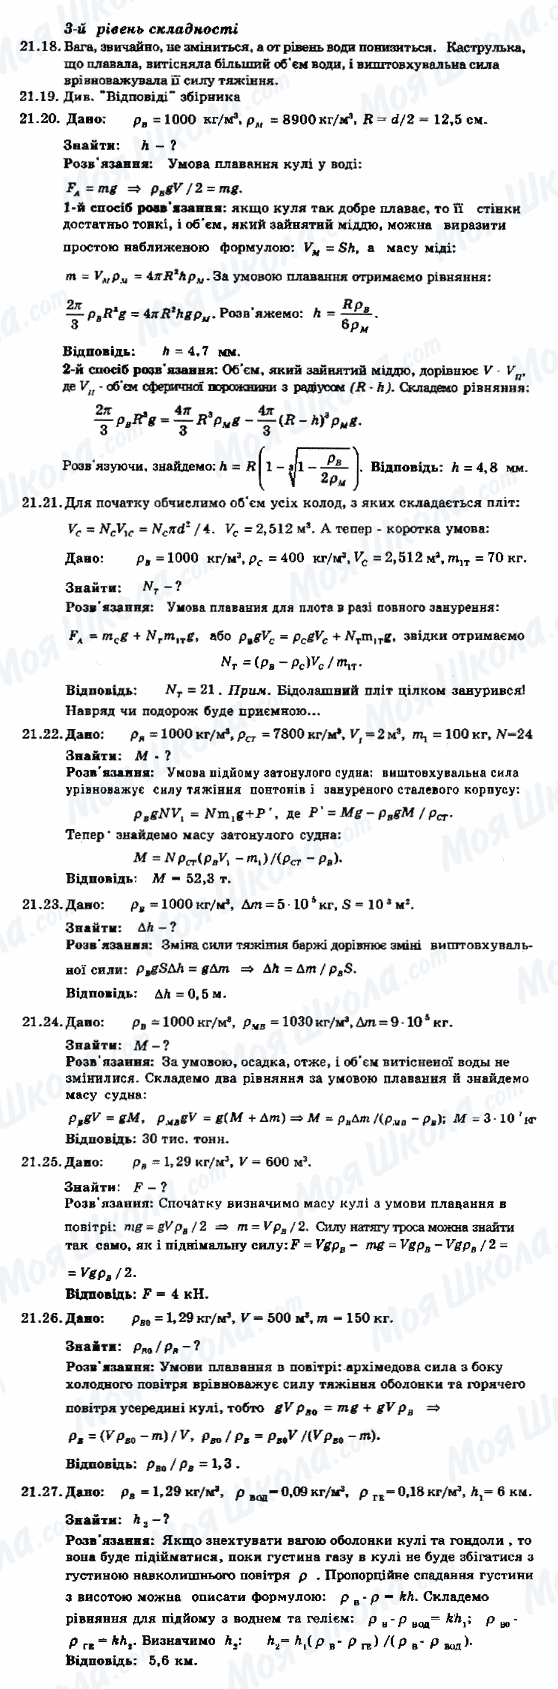 ГДЗ Фізика 8 клас сторінка 21.18-21.27